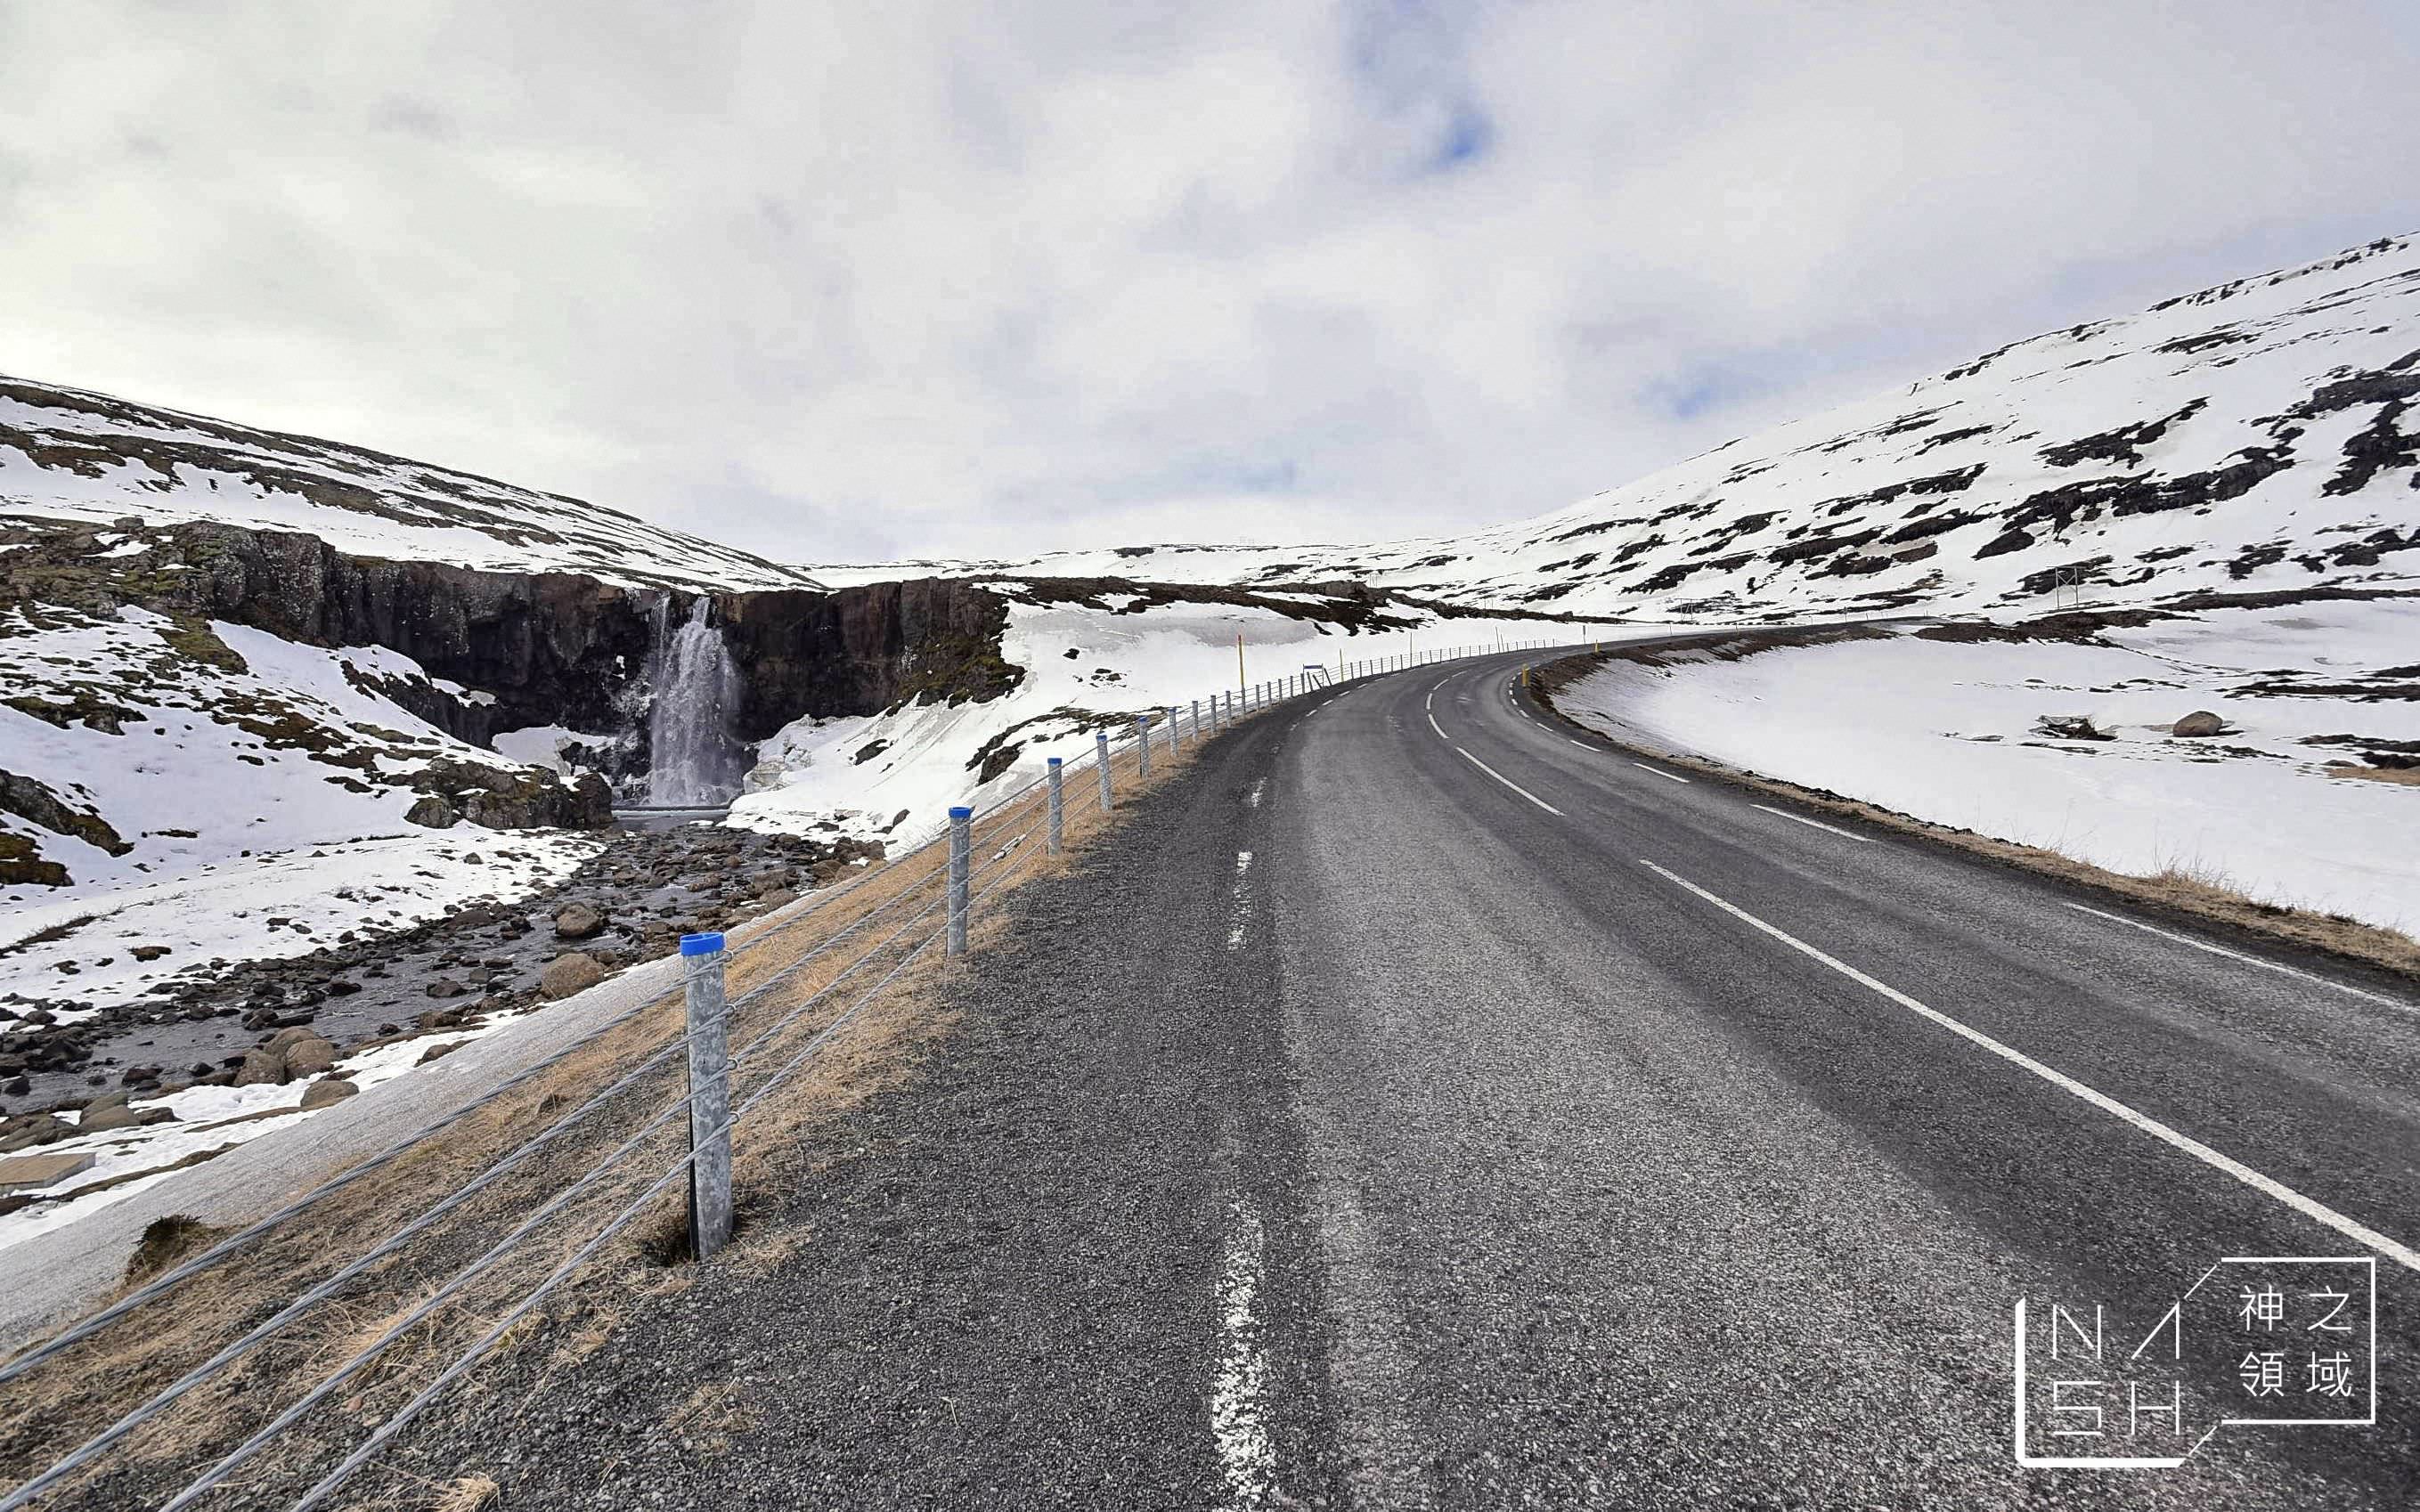 冰島自由行環島景點推薦,塞濟斯菲厄澤,Seydisfjordur,冰島東部峽灣小鎮,白日夢冒險王滑板公路